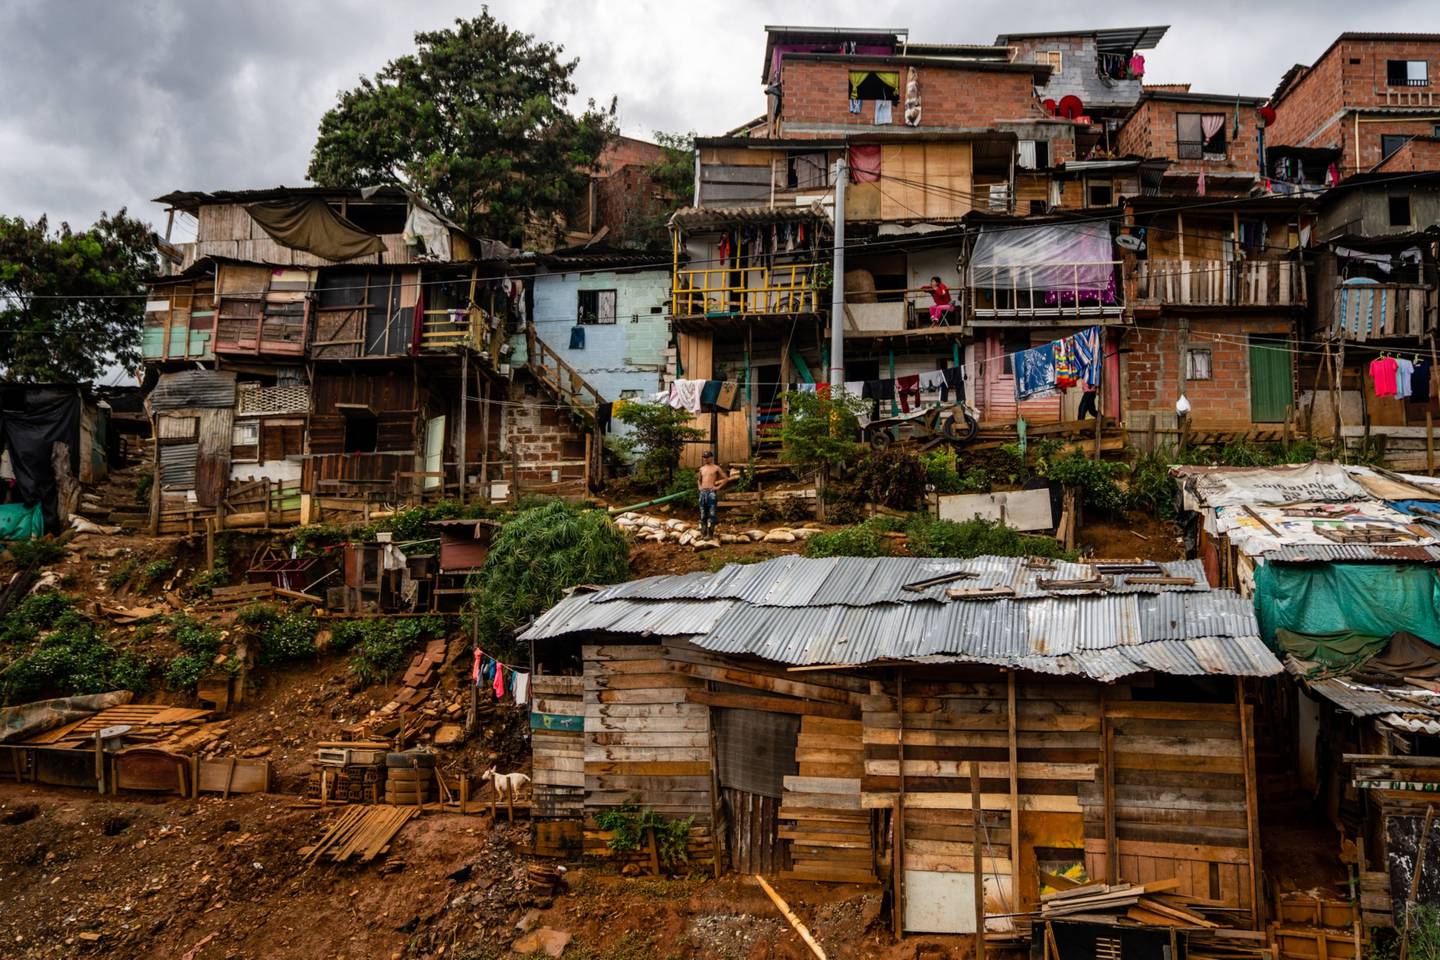 Casas en el barrio de Moravia de Medellín, Colombia, el viernes 24 de julio de 2020.